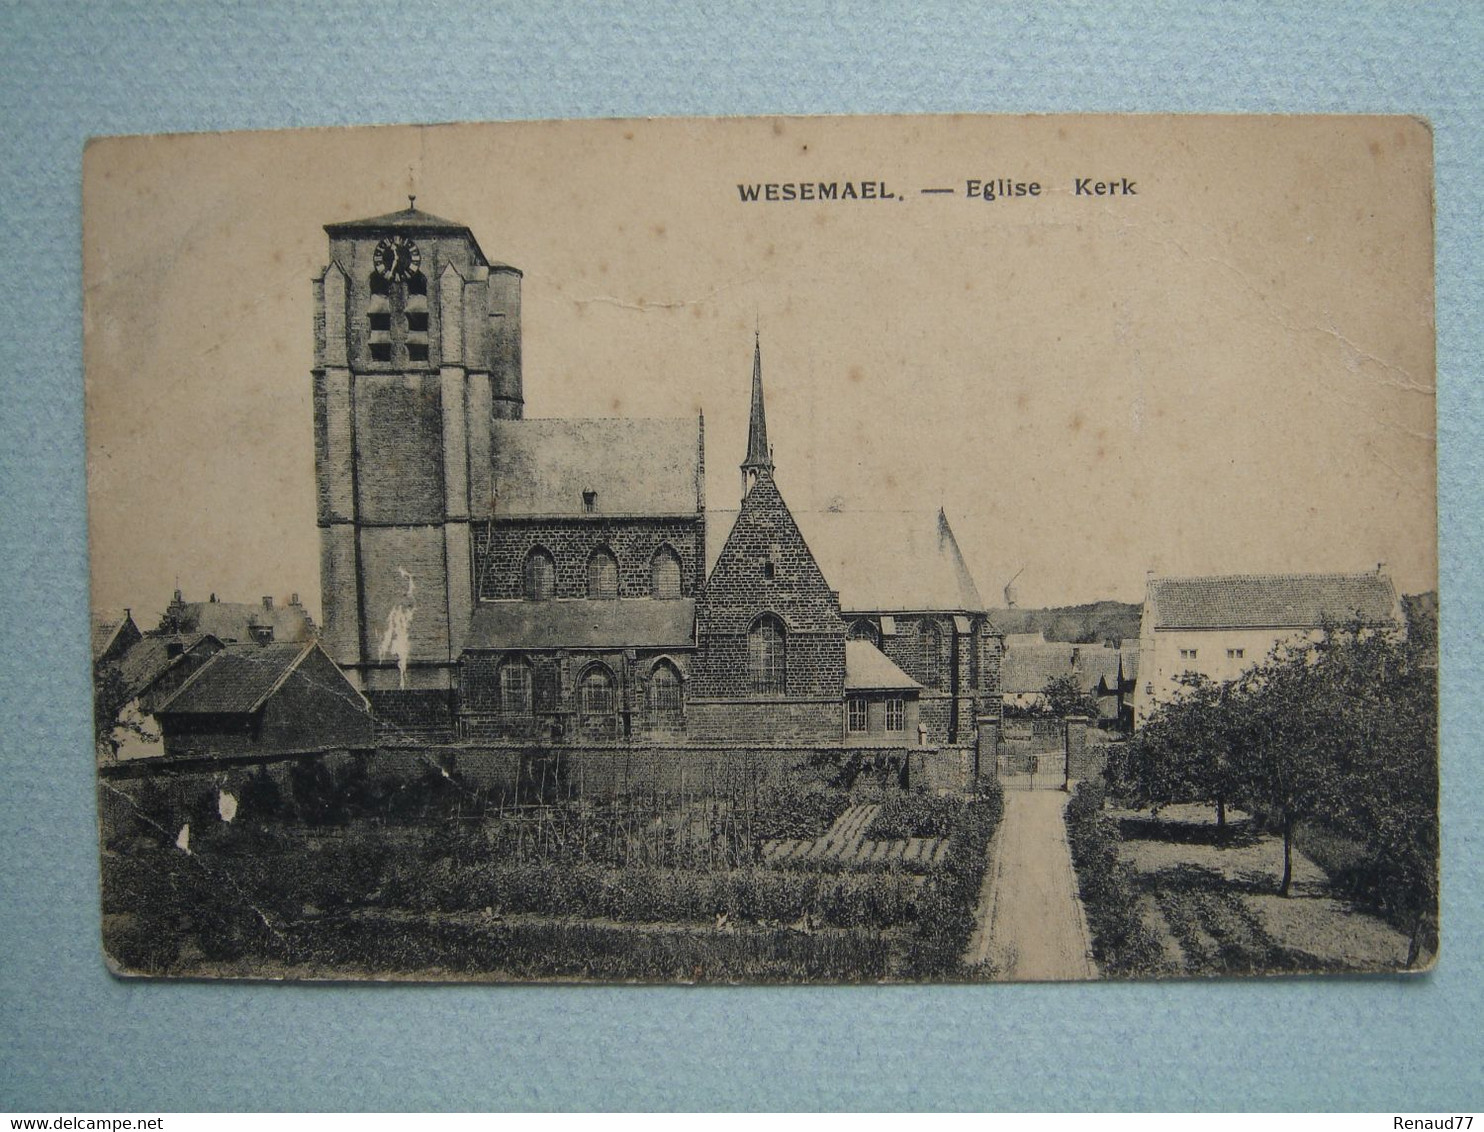 Wesemael - Eglise - Rotselaar